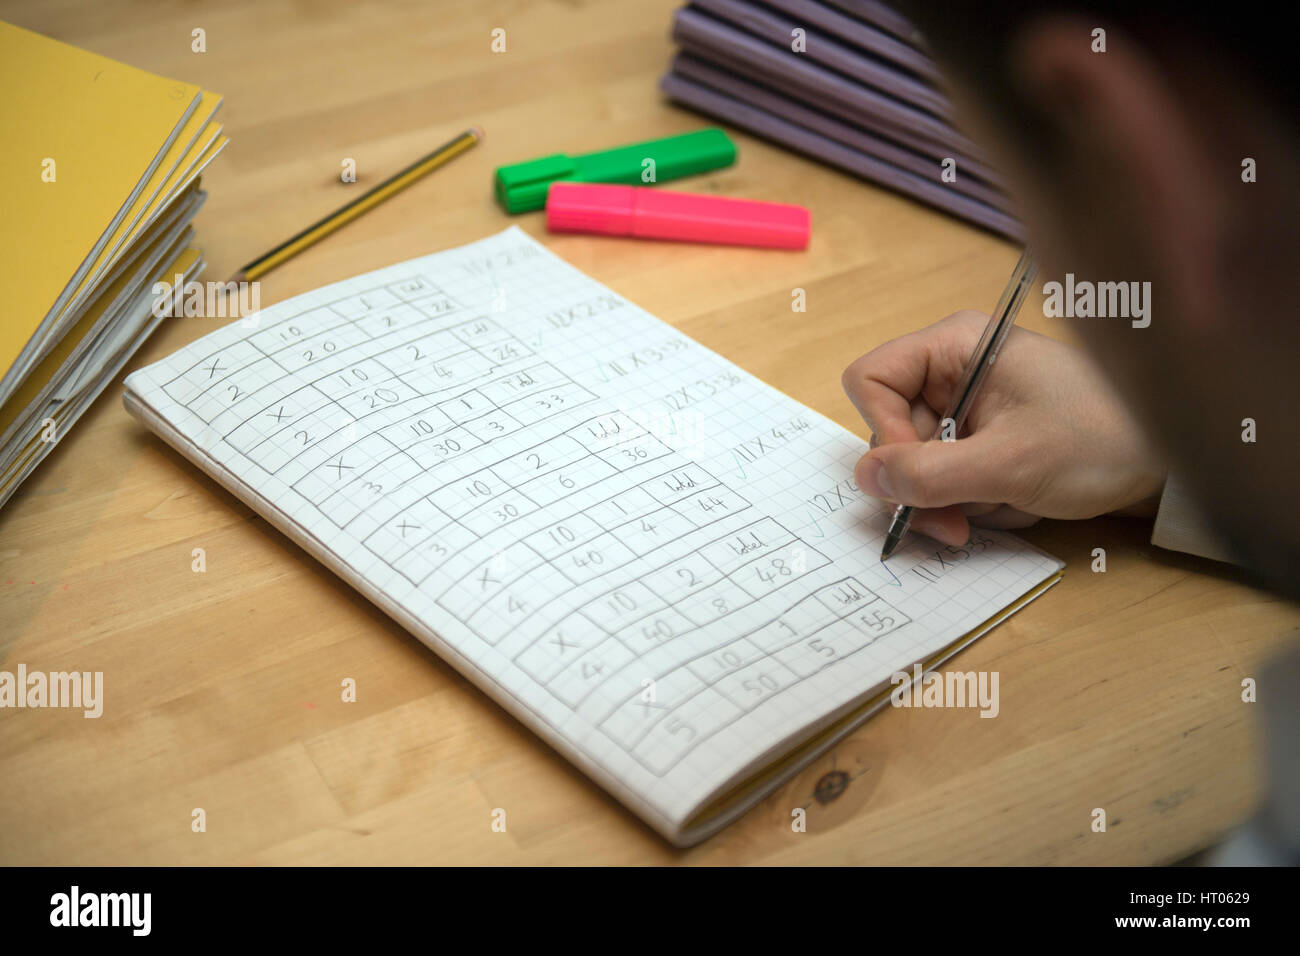 A primary school teacher marking a pupil's maths homework. Stock Photo